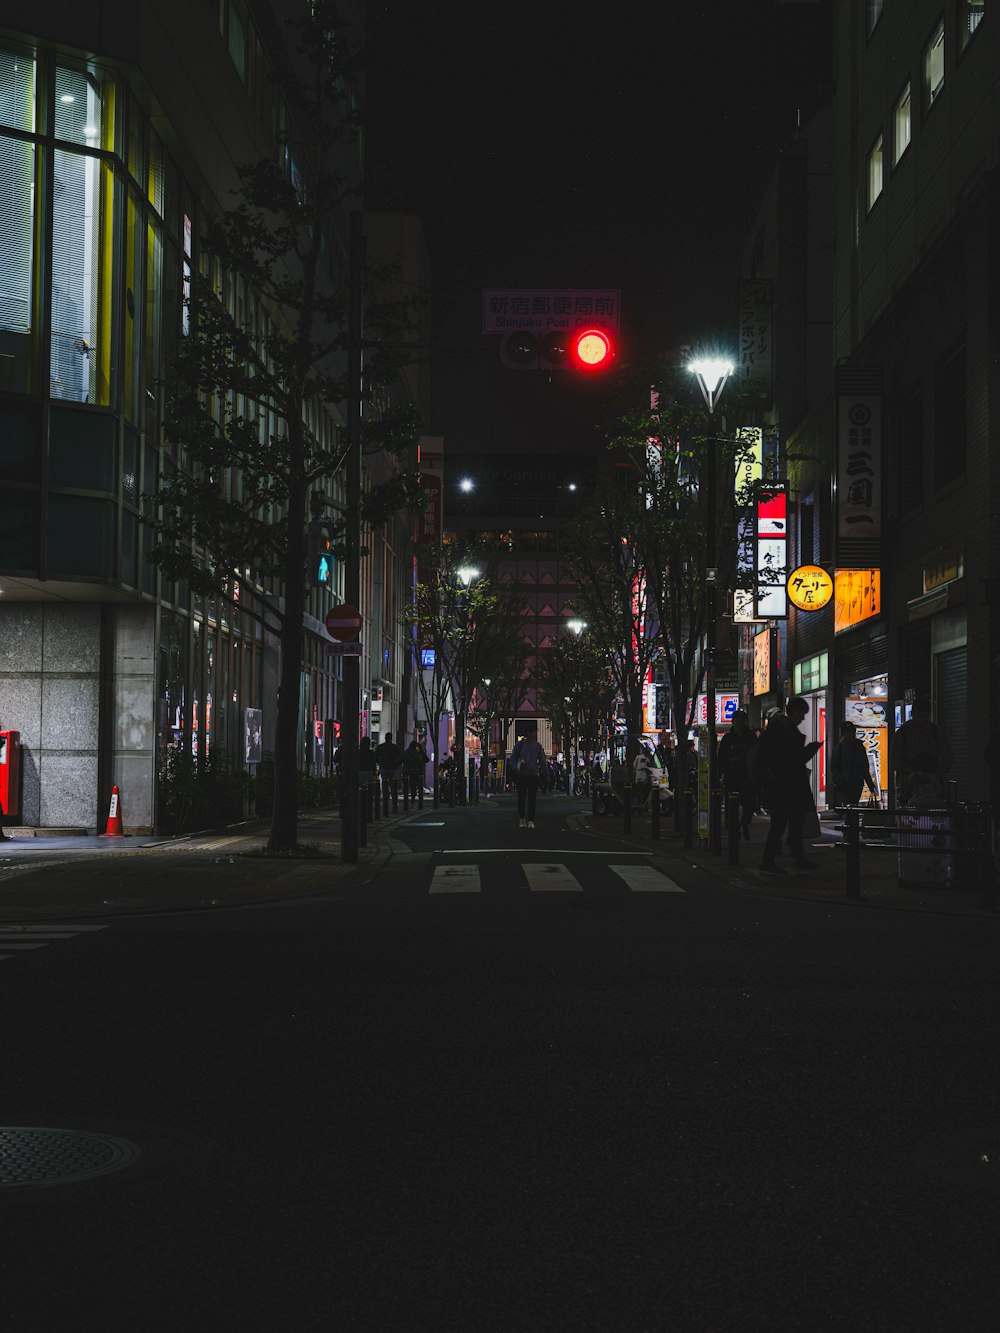 Eine nächtliche Stadtstraße mit roter Ampel